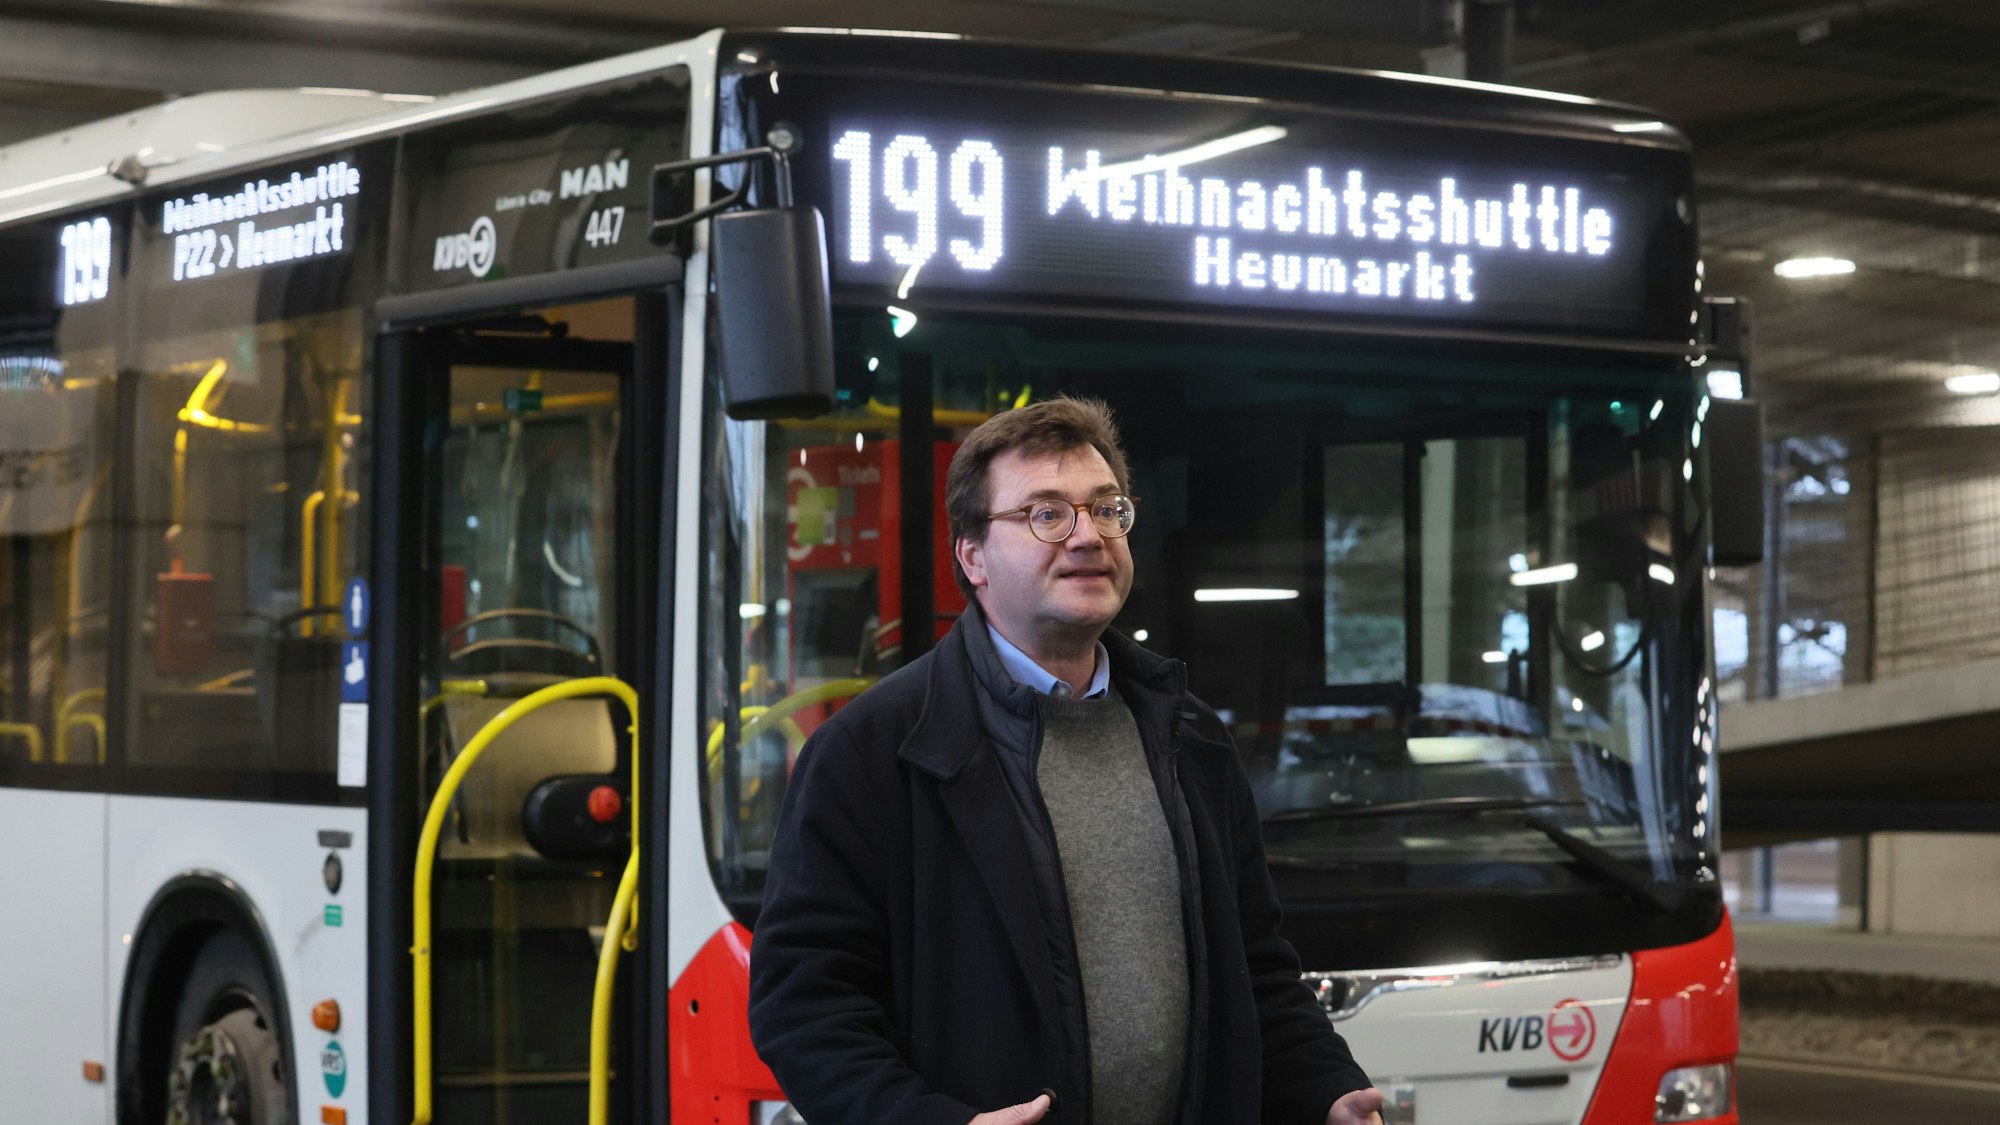 KVB-Sprecher Stephan Anemüller steht vor einem Bus, auf dem „Weihnachtsmarktshuttle Heumarkt“ steht und gestikuliert.